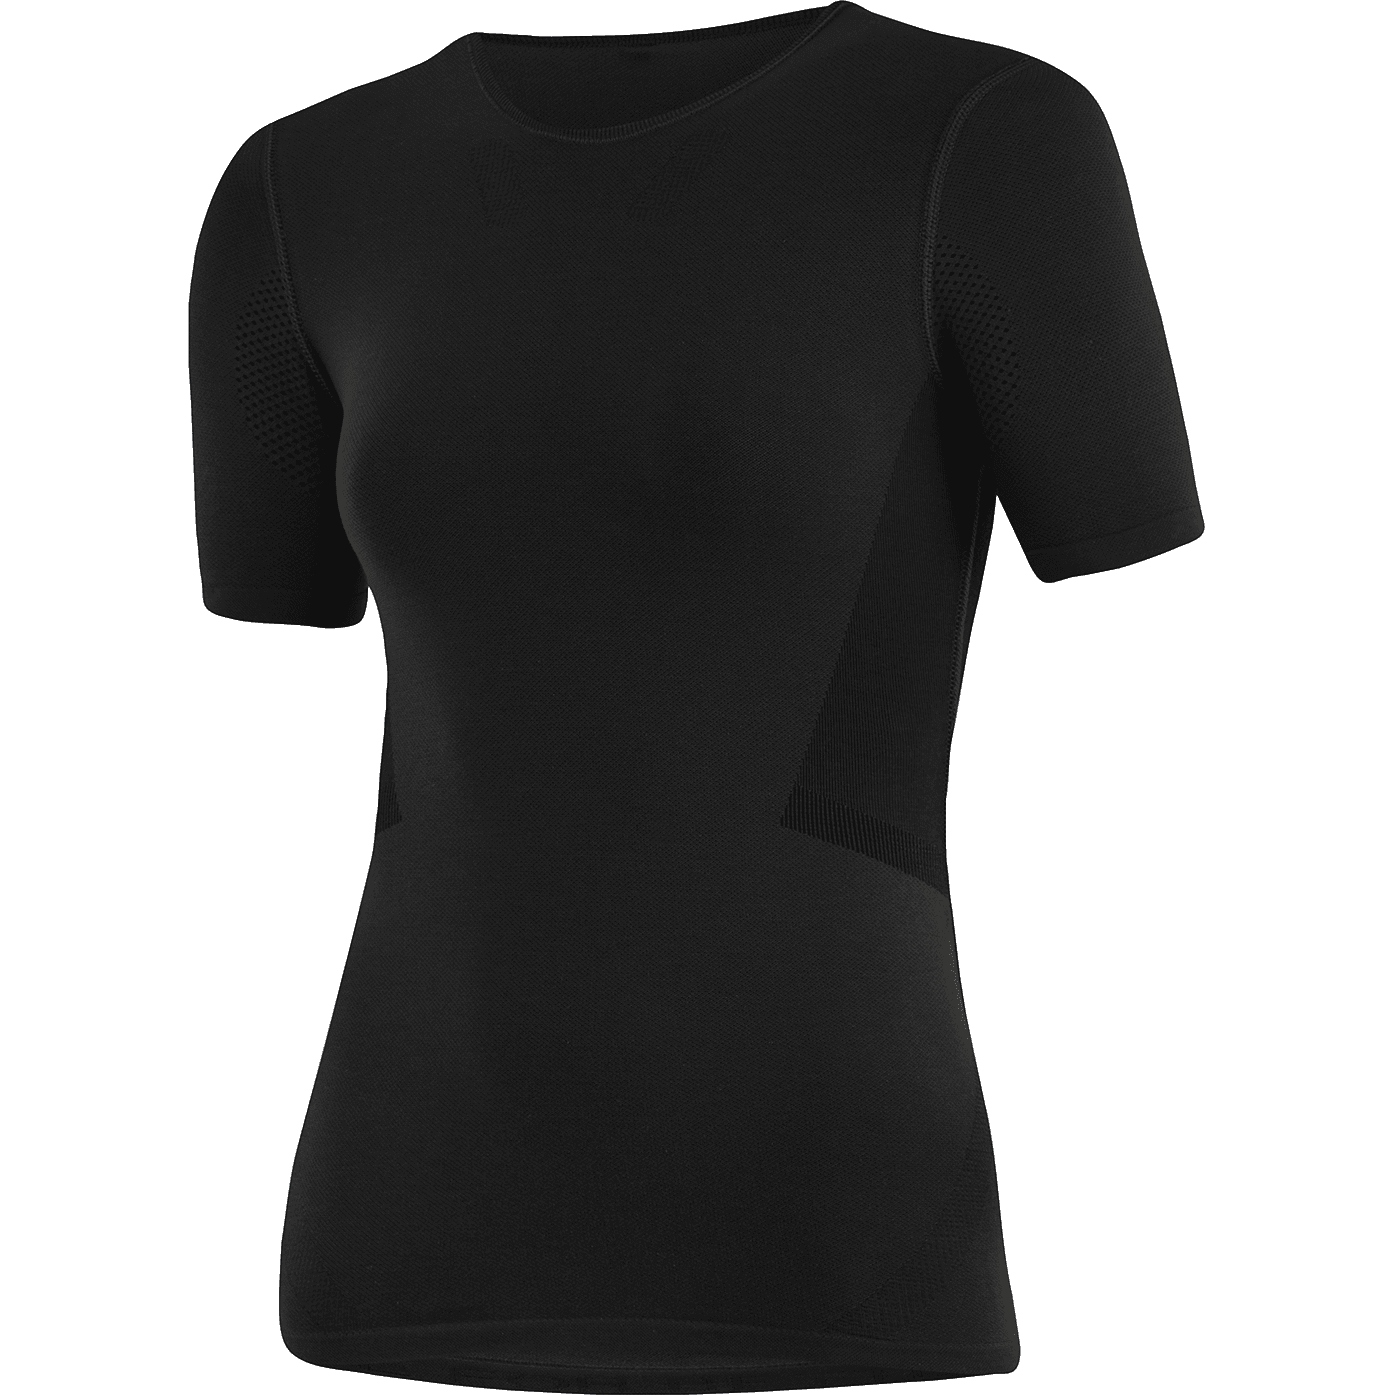 Produktbild von Löffler Transtex Hybrid Damen T-Shirt - schwarz 990